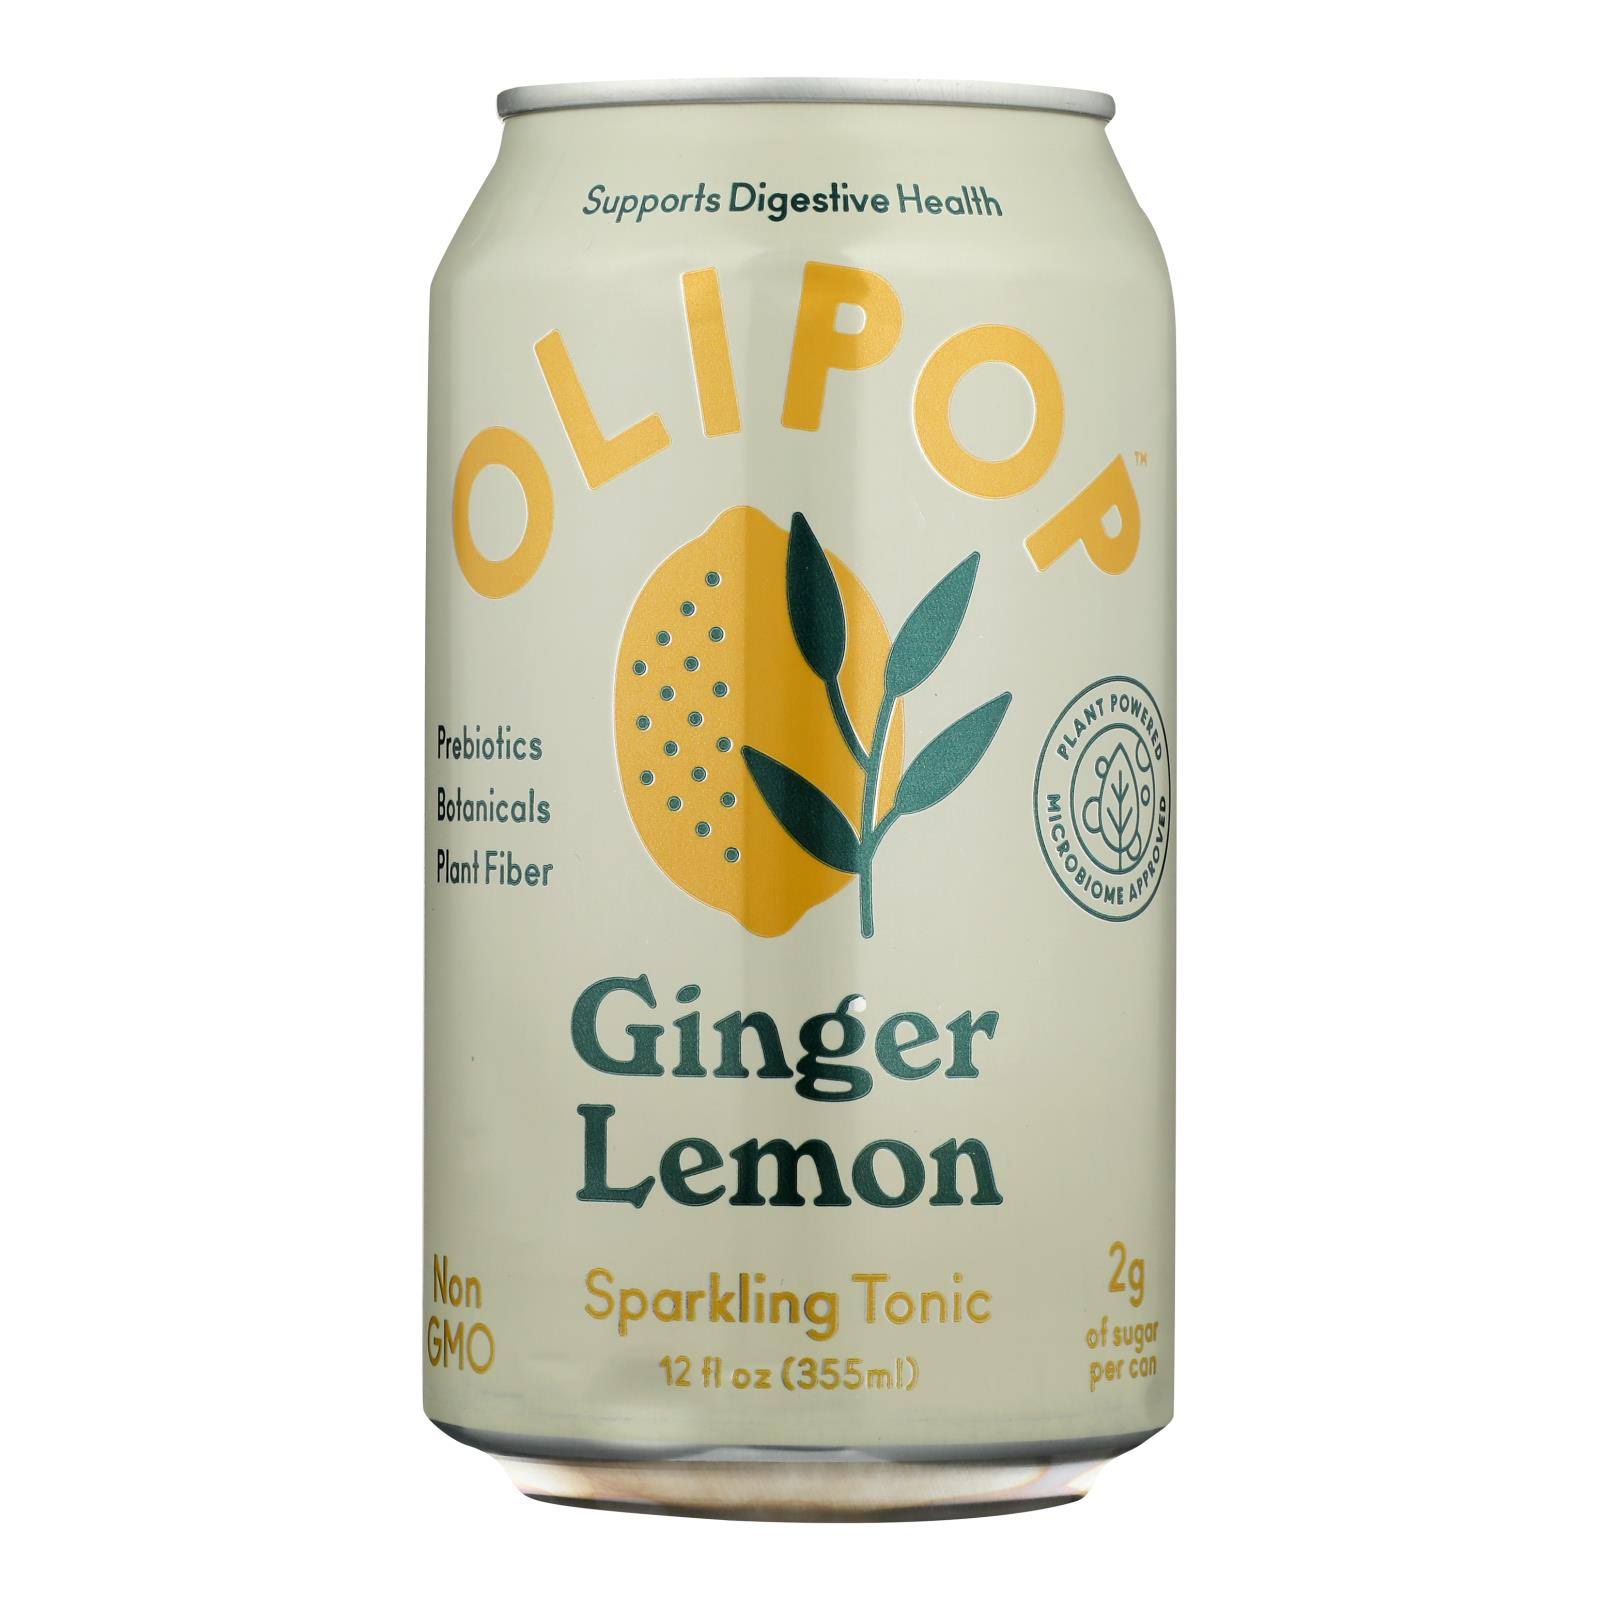 Olipop Sparkling Tonic, Ginger Lemon - 12 fl oz